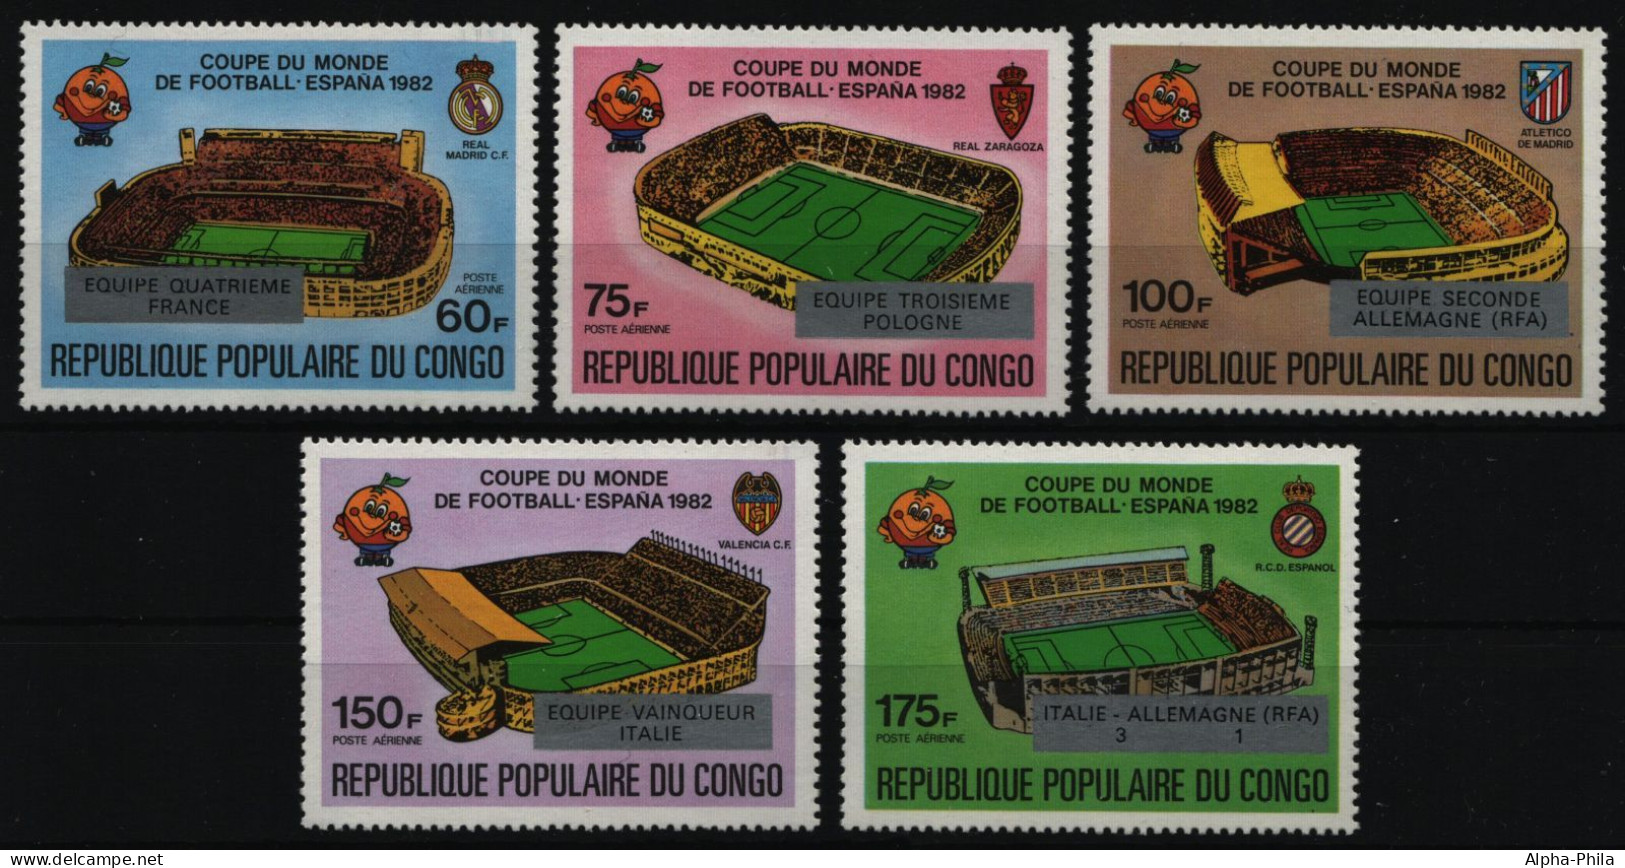 Kongo-Brazzaville 1982 - Mi-Nr. 883-887 ** - MNH - Fußball / Soccer - Ungebraucht